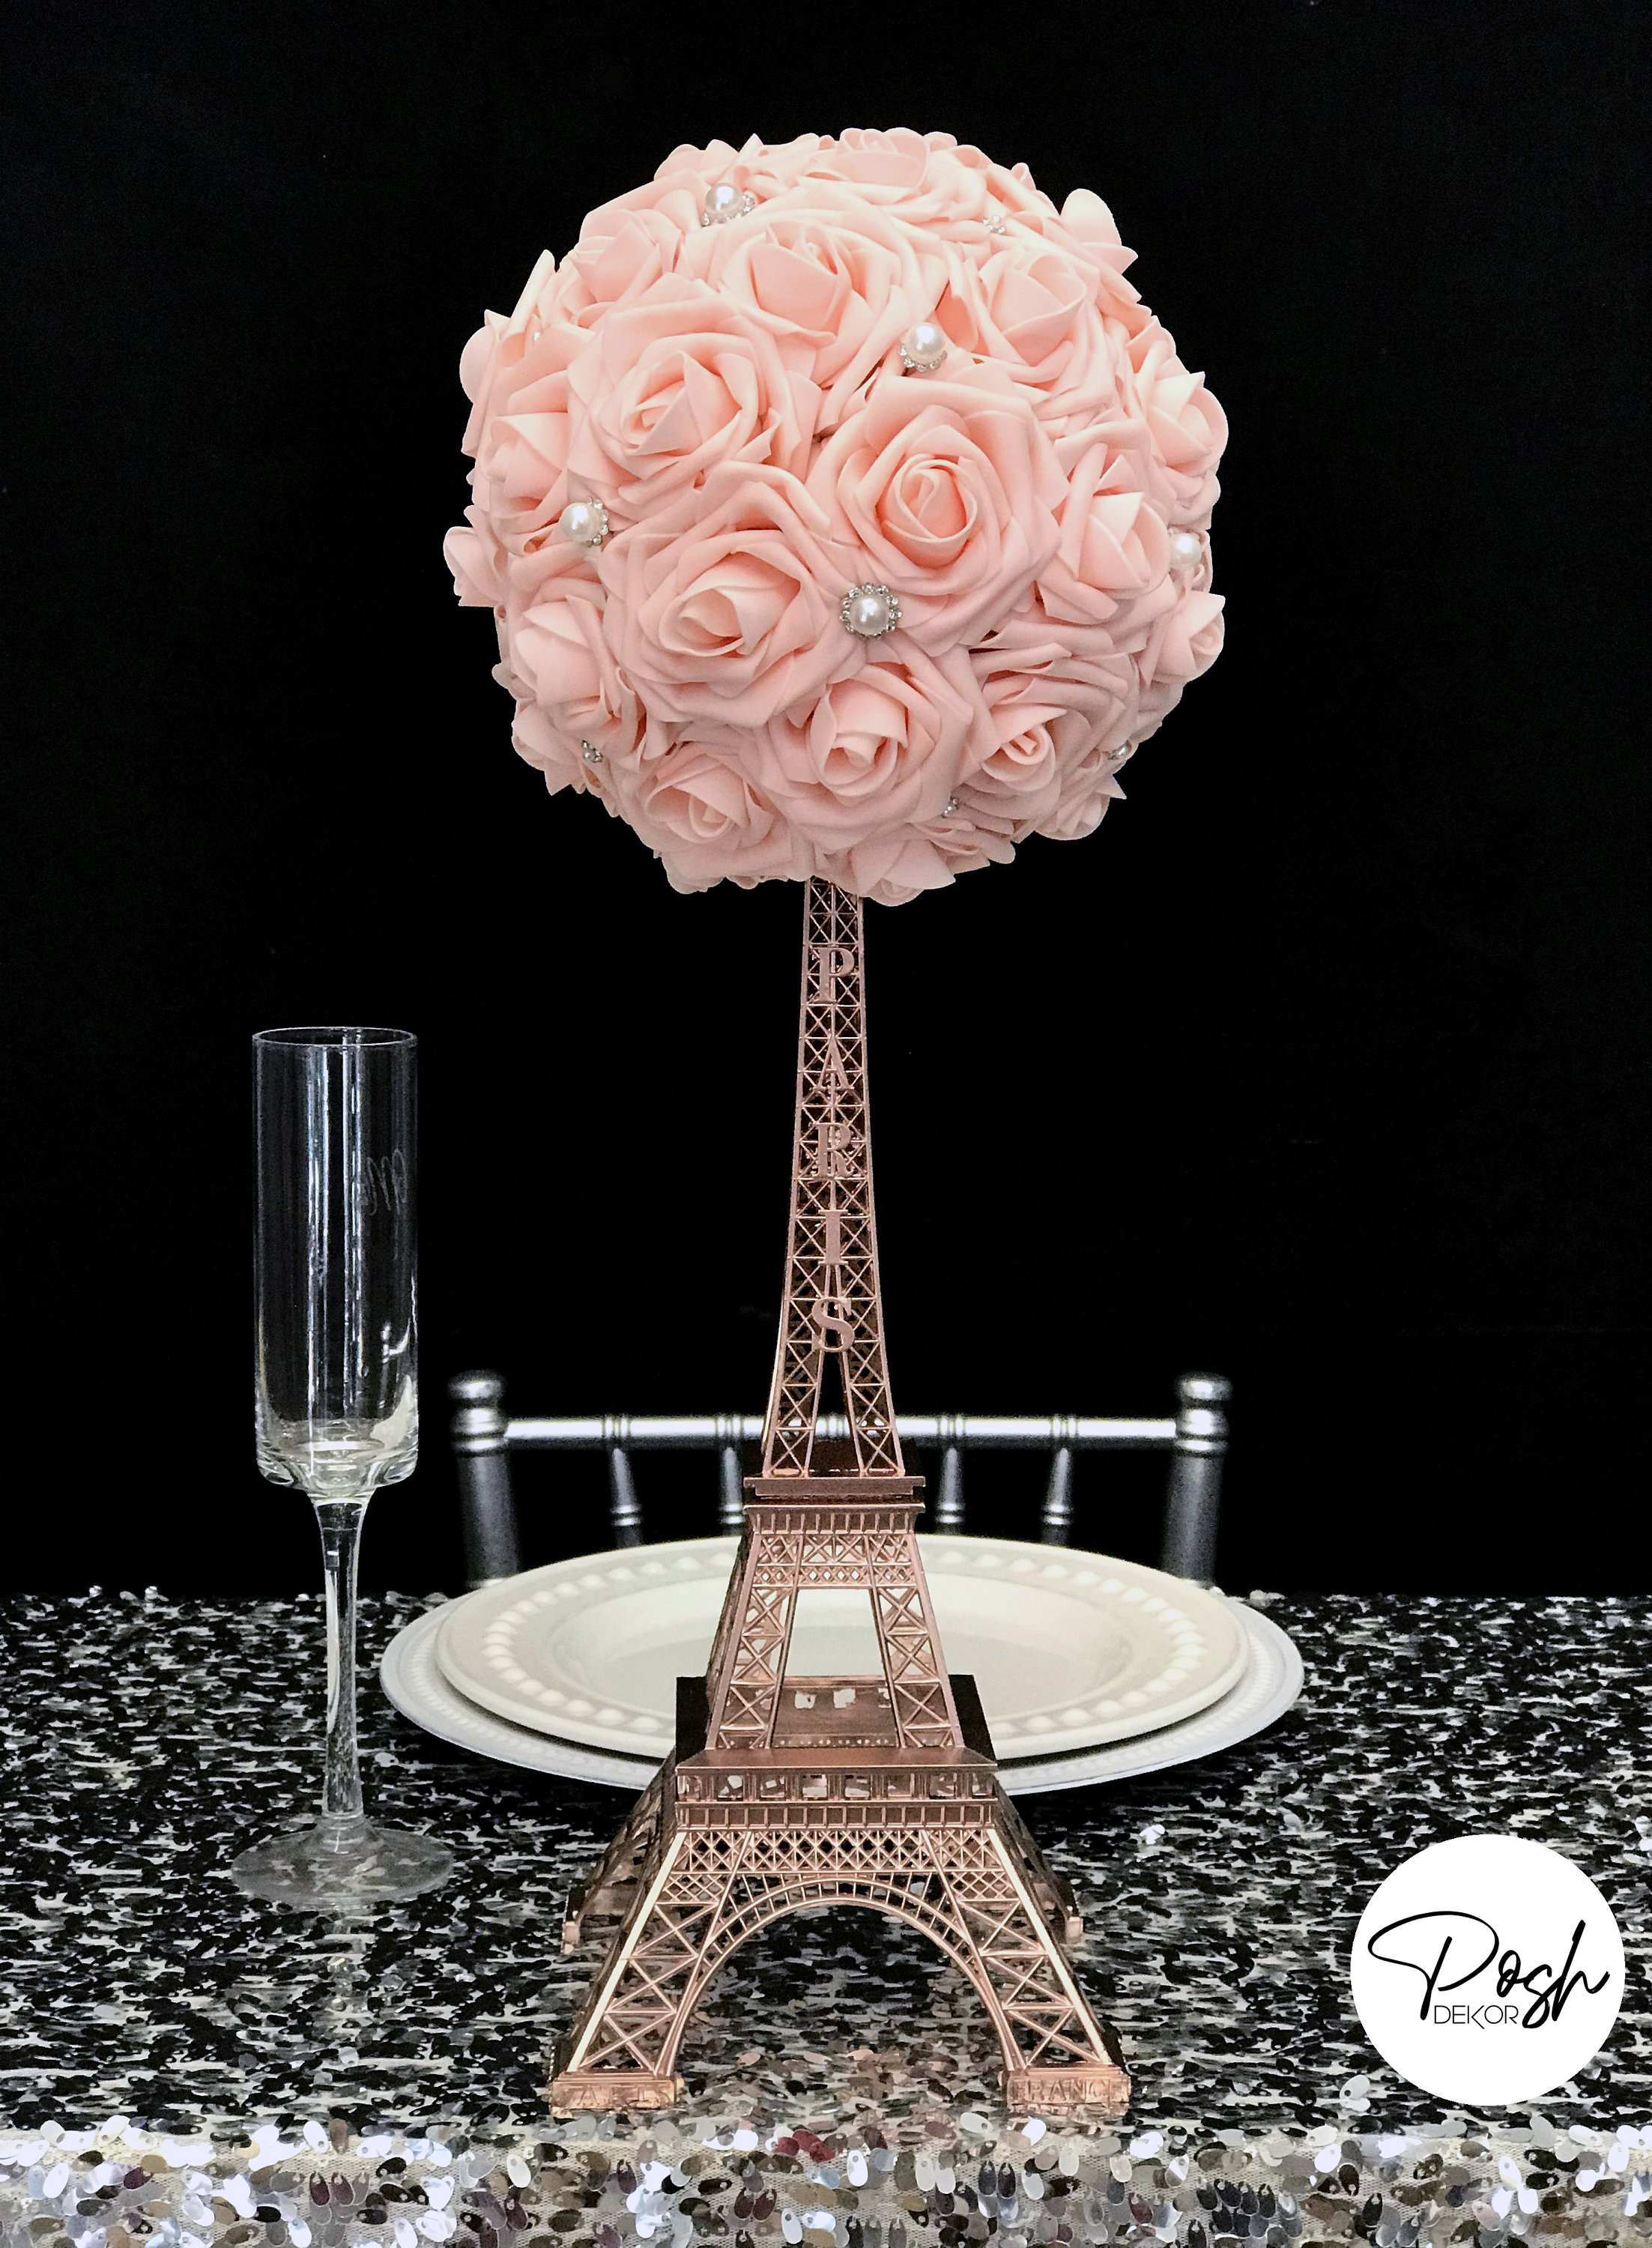 How-to make an Eiffel Tower flower centerpiece 